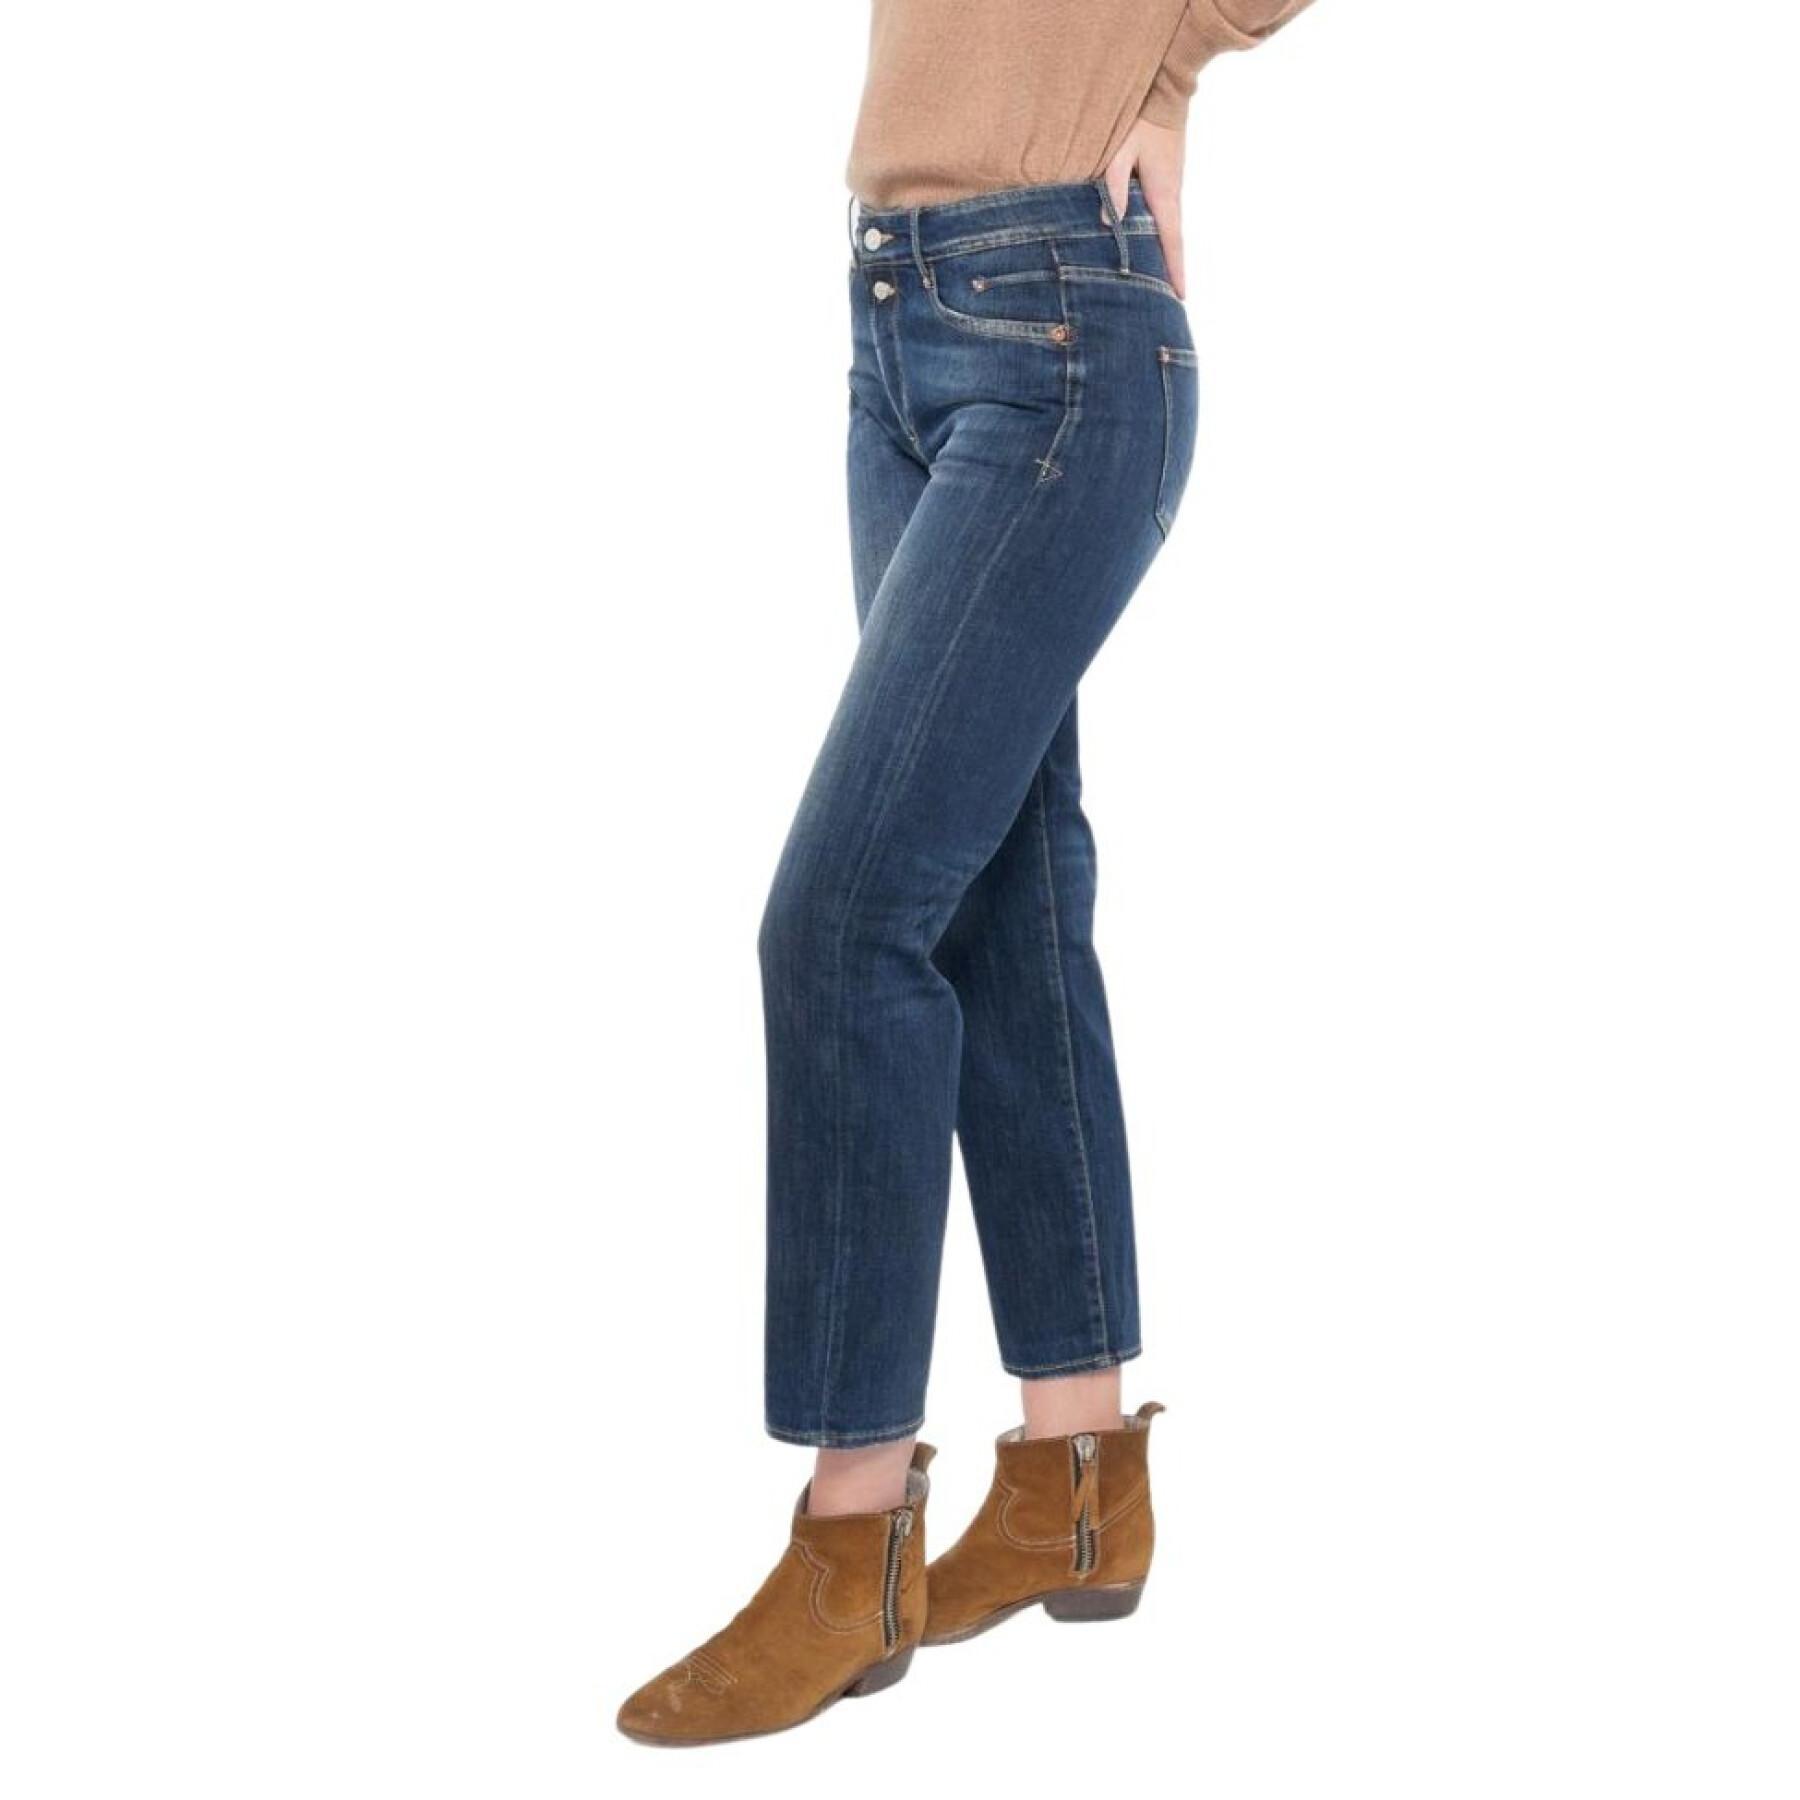 Women's high waist jeans Le temps des cerises Basic 400/18